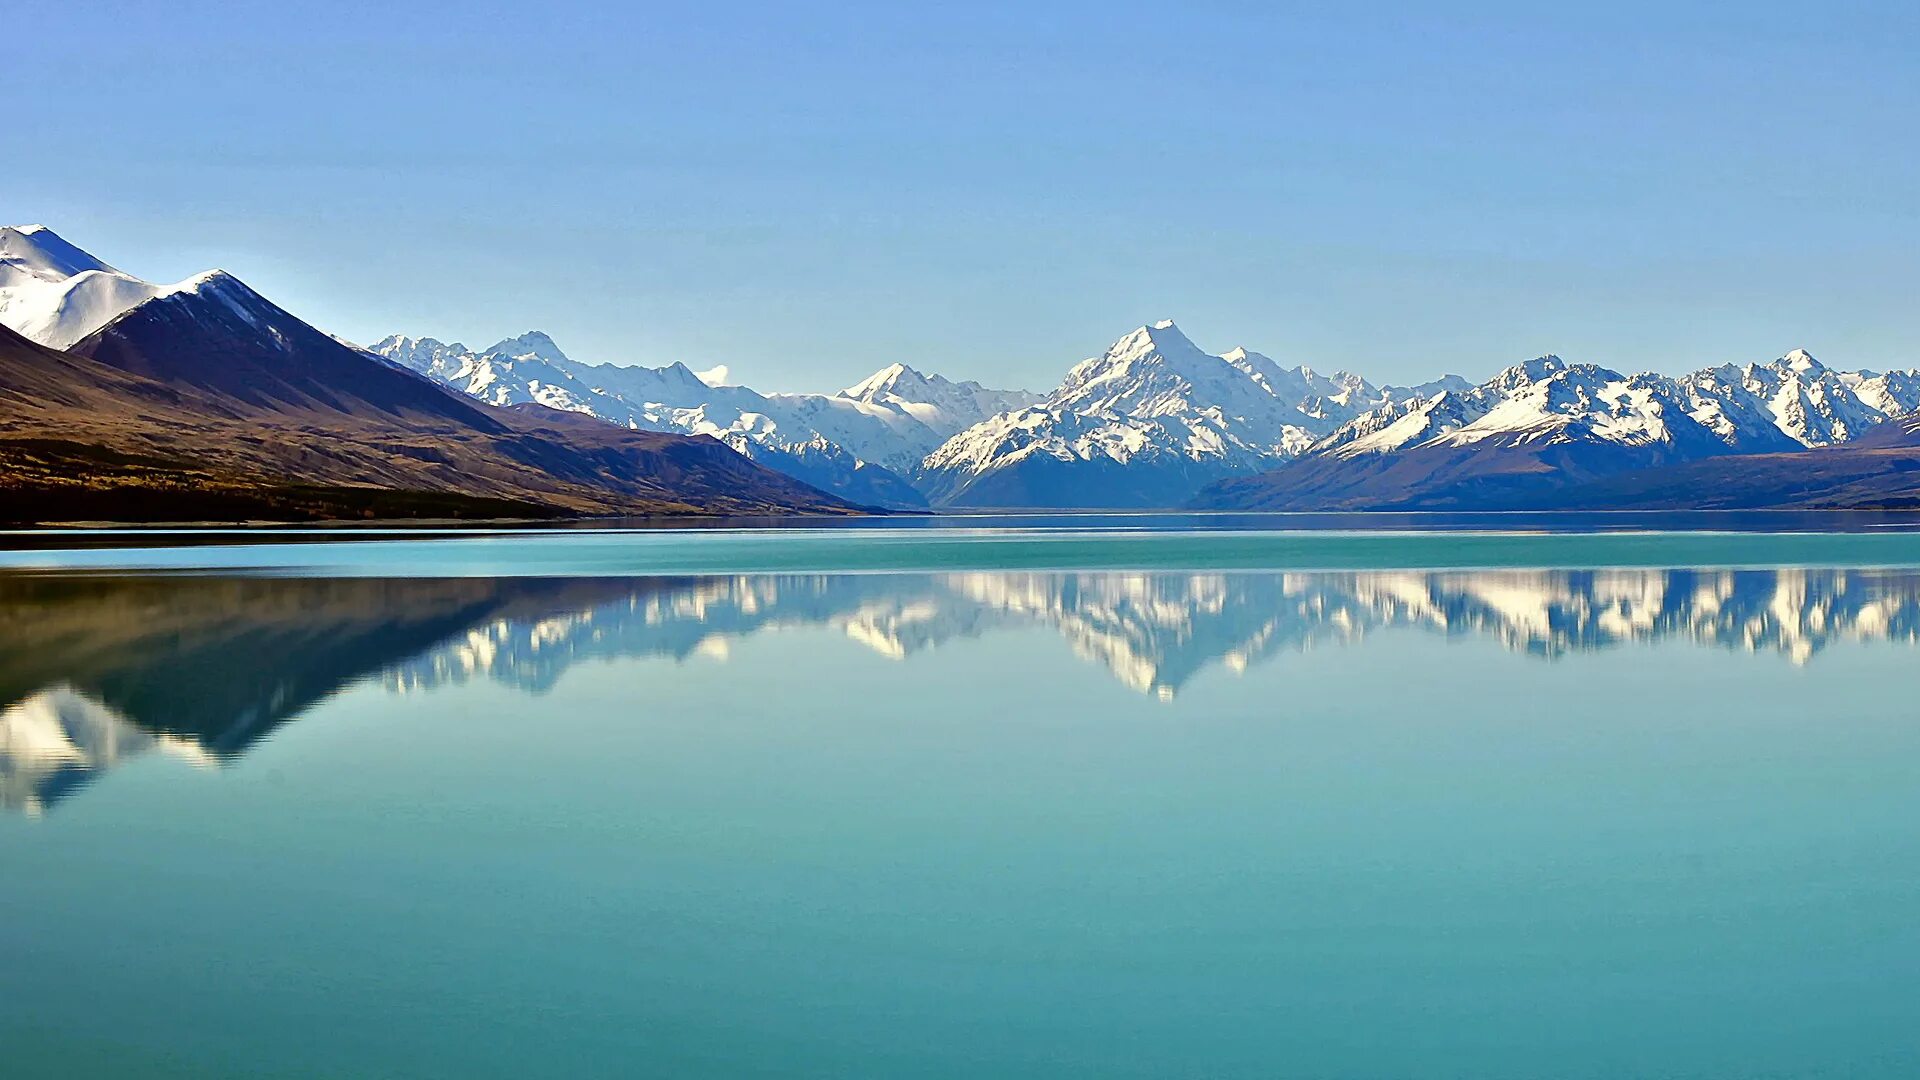 Обои качества 1080. Озеро Хавеа новая Зеландия. Кучерлинское озеро Алтай. Ала Куль Киргизия. Море и горы.